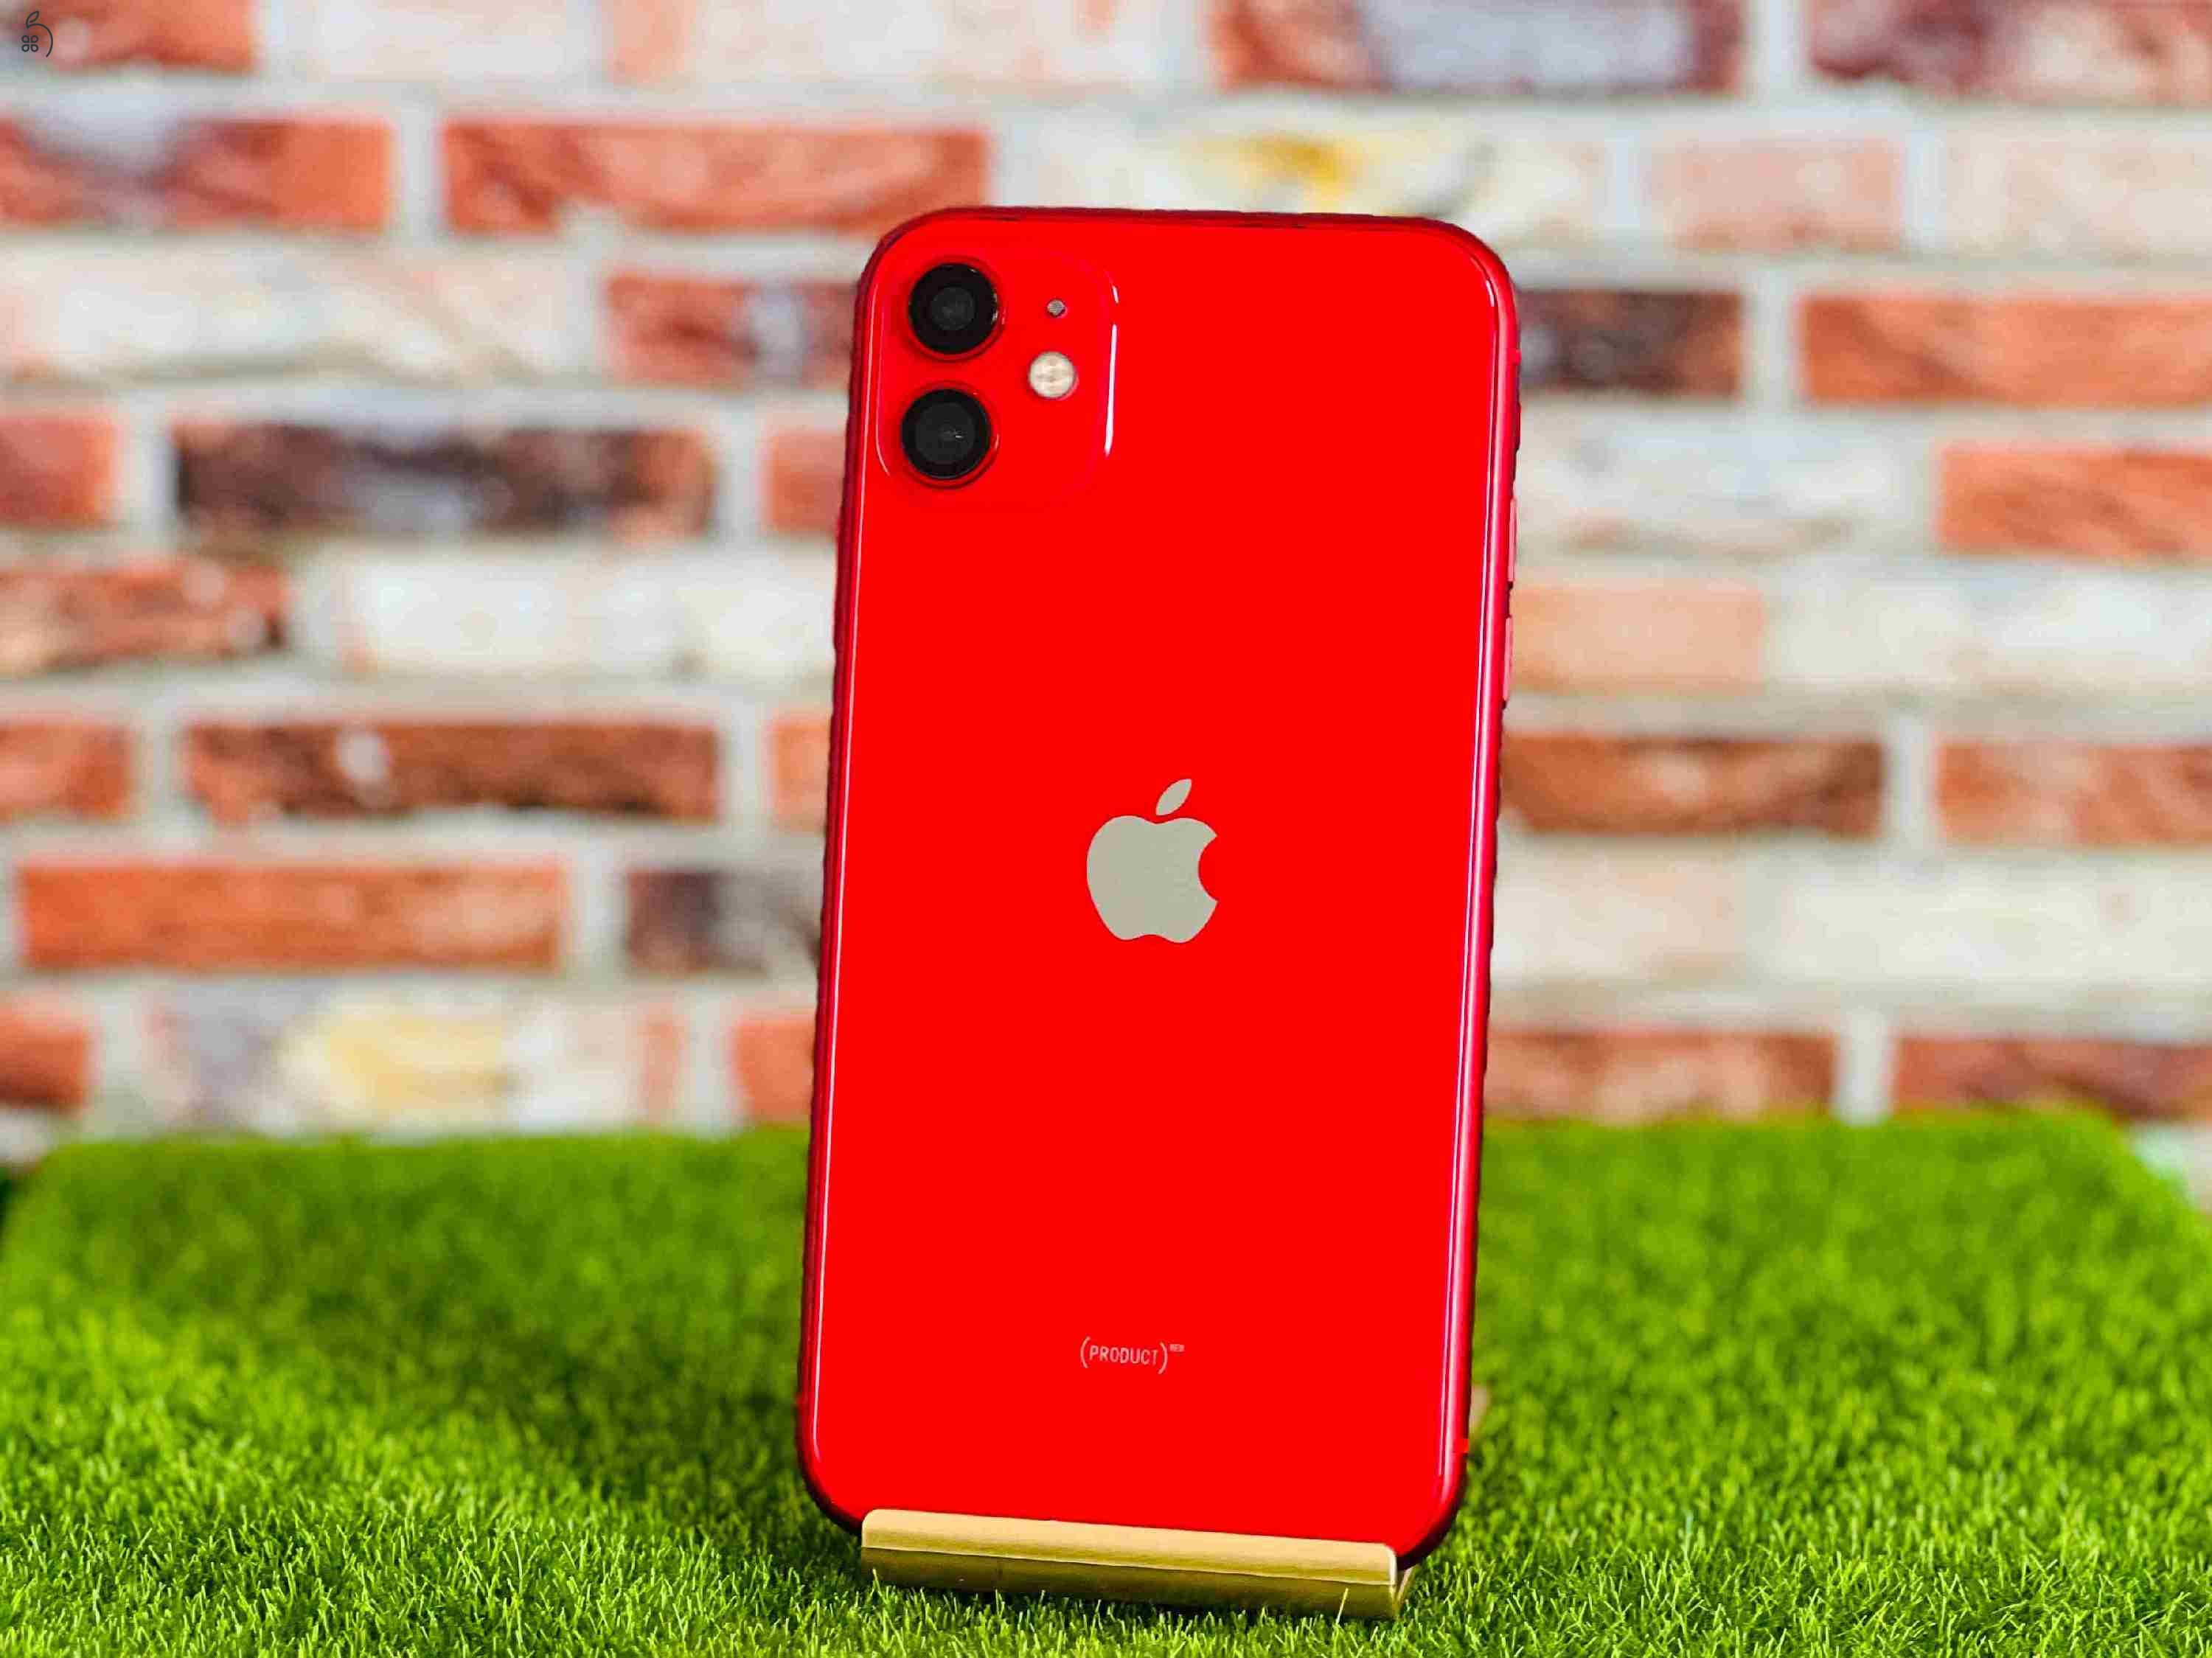 Eladó iPhone 11 128 GB PRODUCT RED 100% aksi szép állapotú - 12 HÓ GARANCIA - S1508